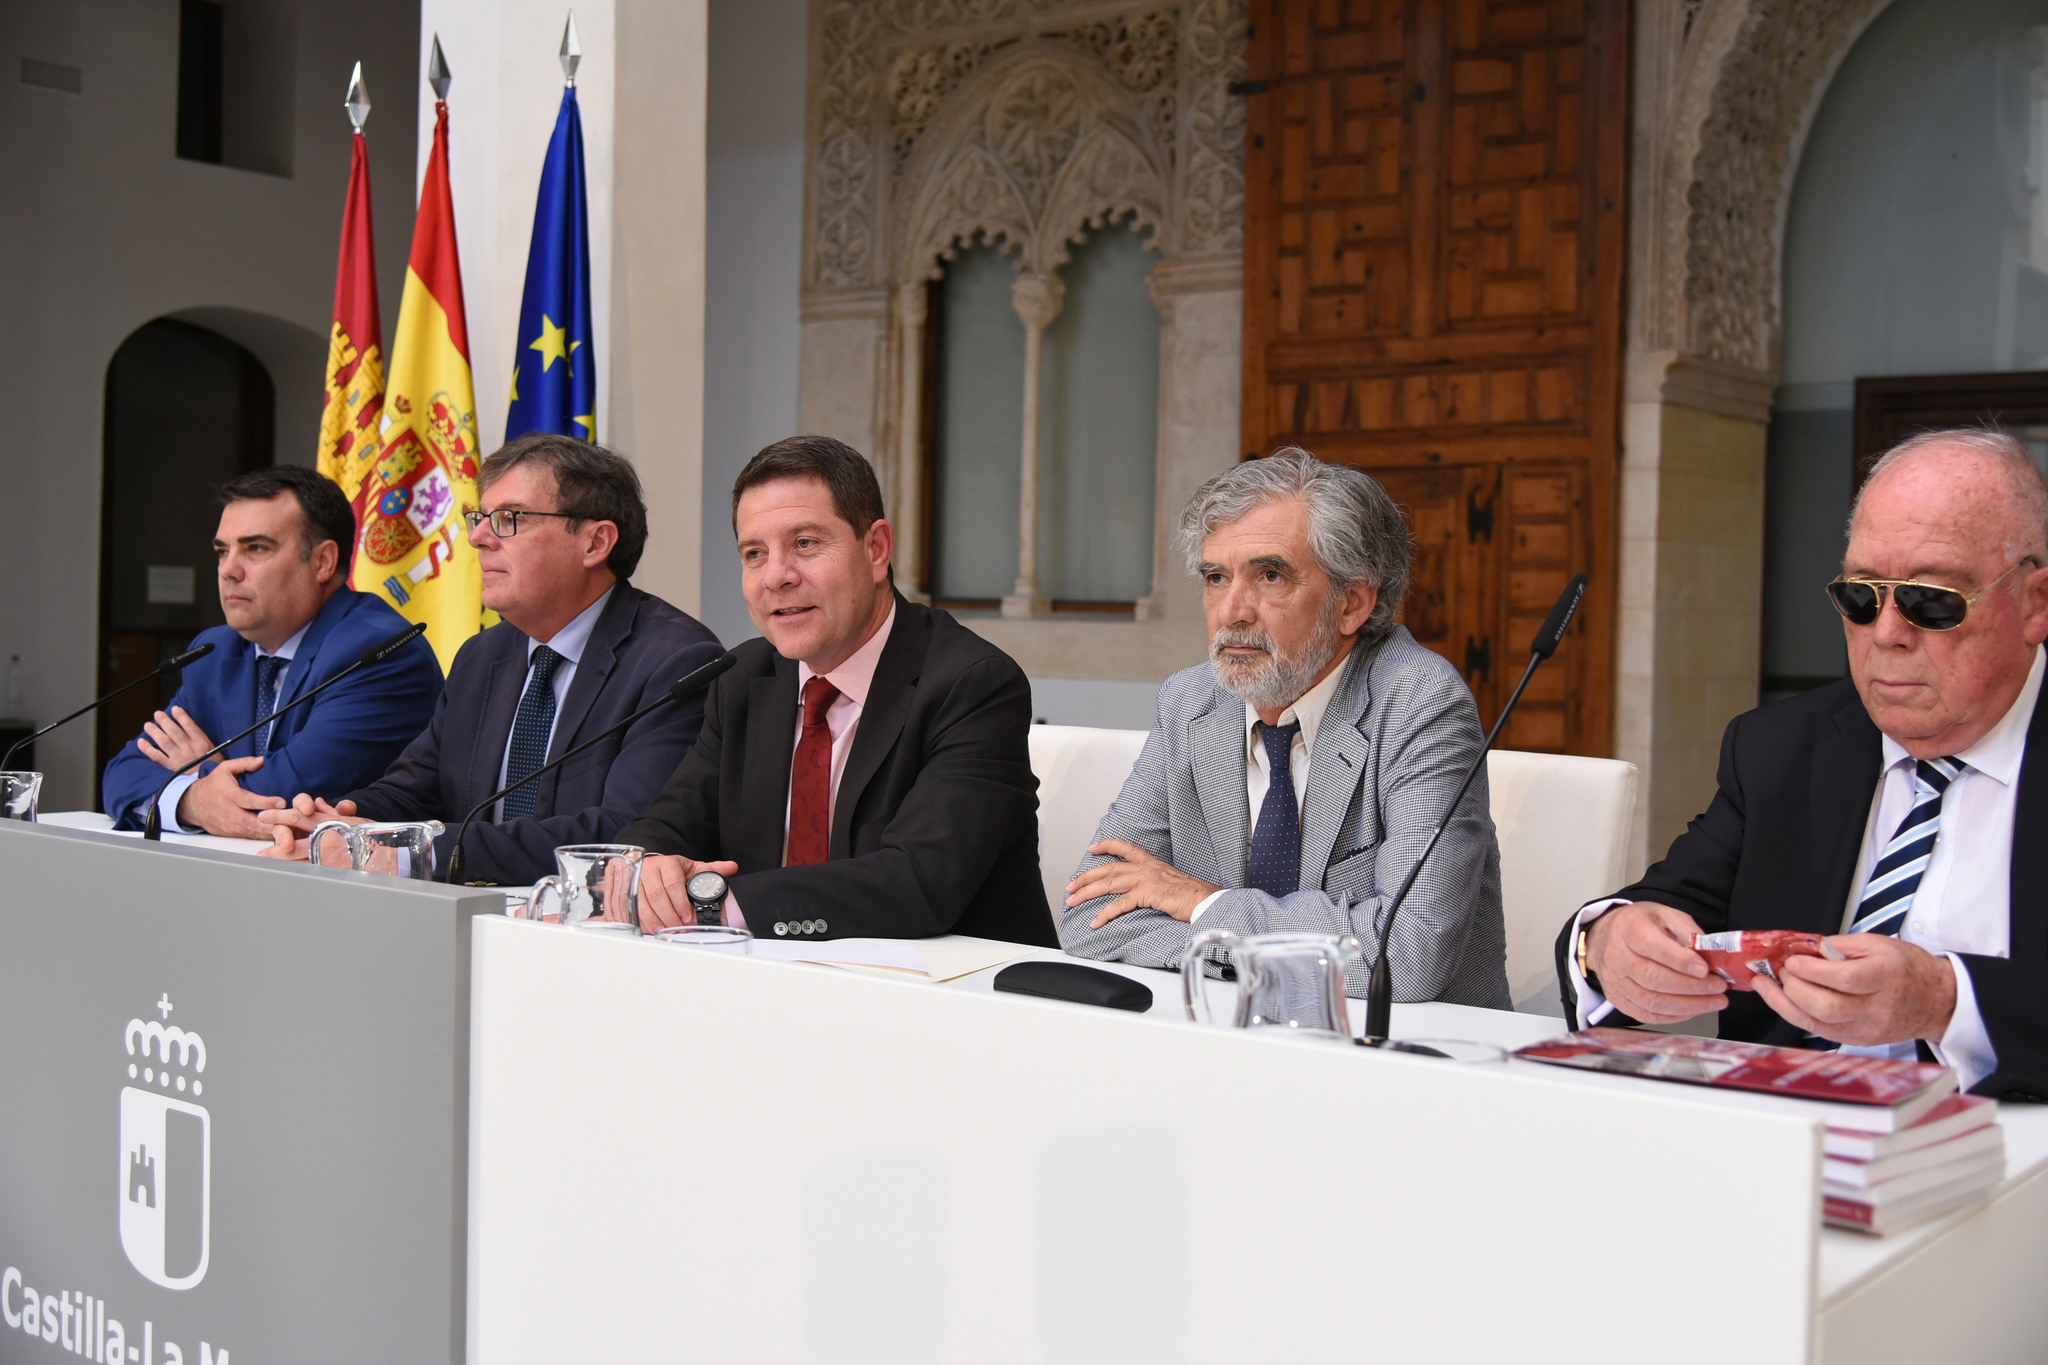 Page ha anunciado que el Día de Castilla-La Mancha será en Talavera